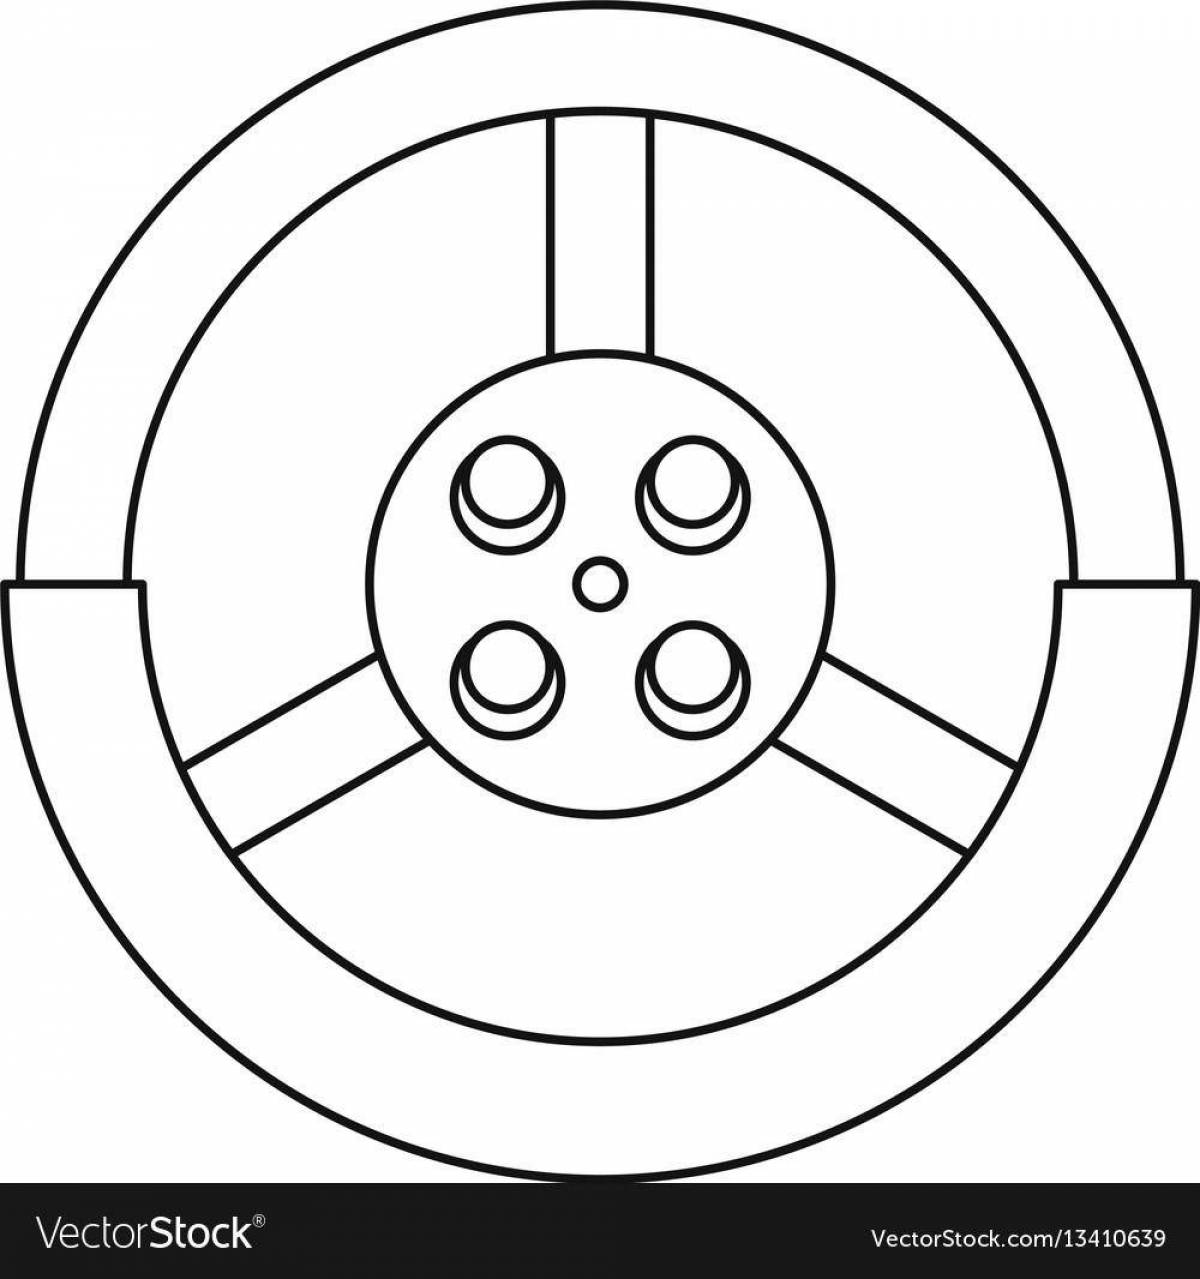 Игривая страница раскраски рулевого колеса для детей